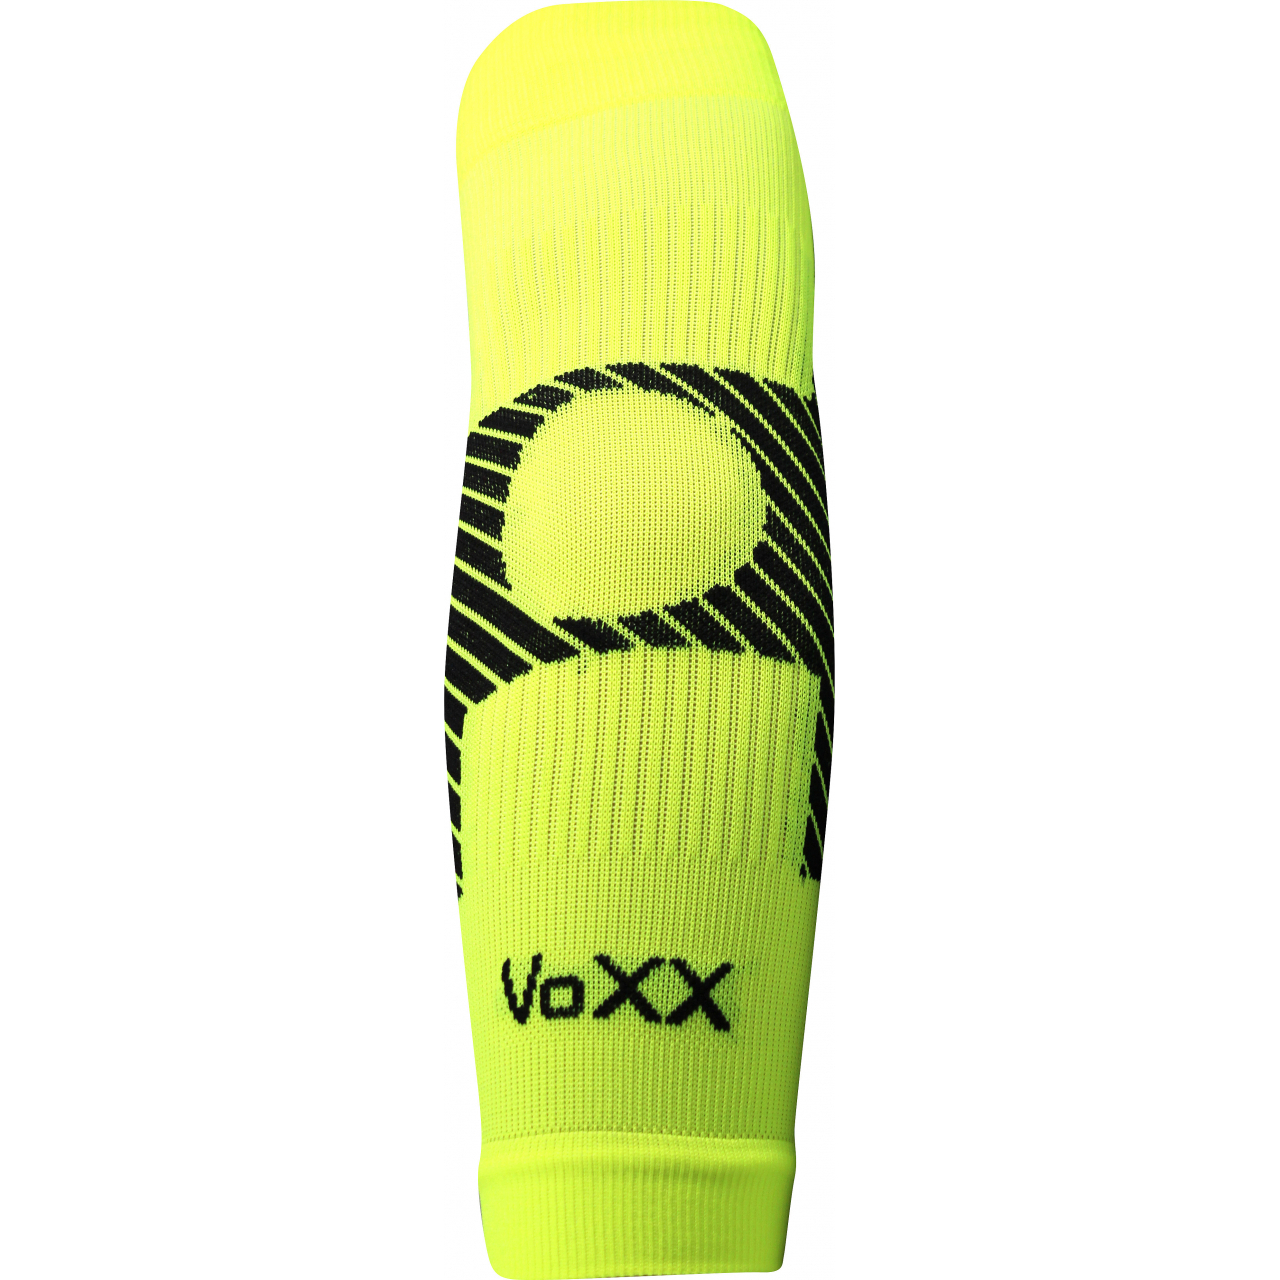 Návlek kompresní Voxx Protect loket - žlutý svítící, S/M